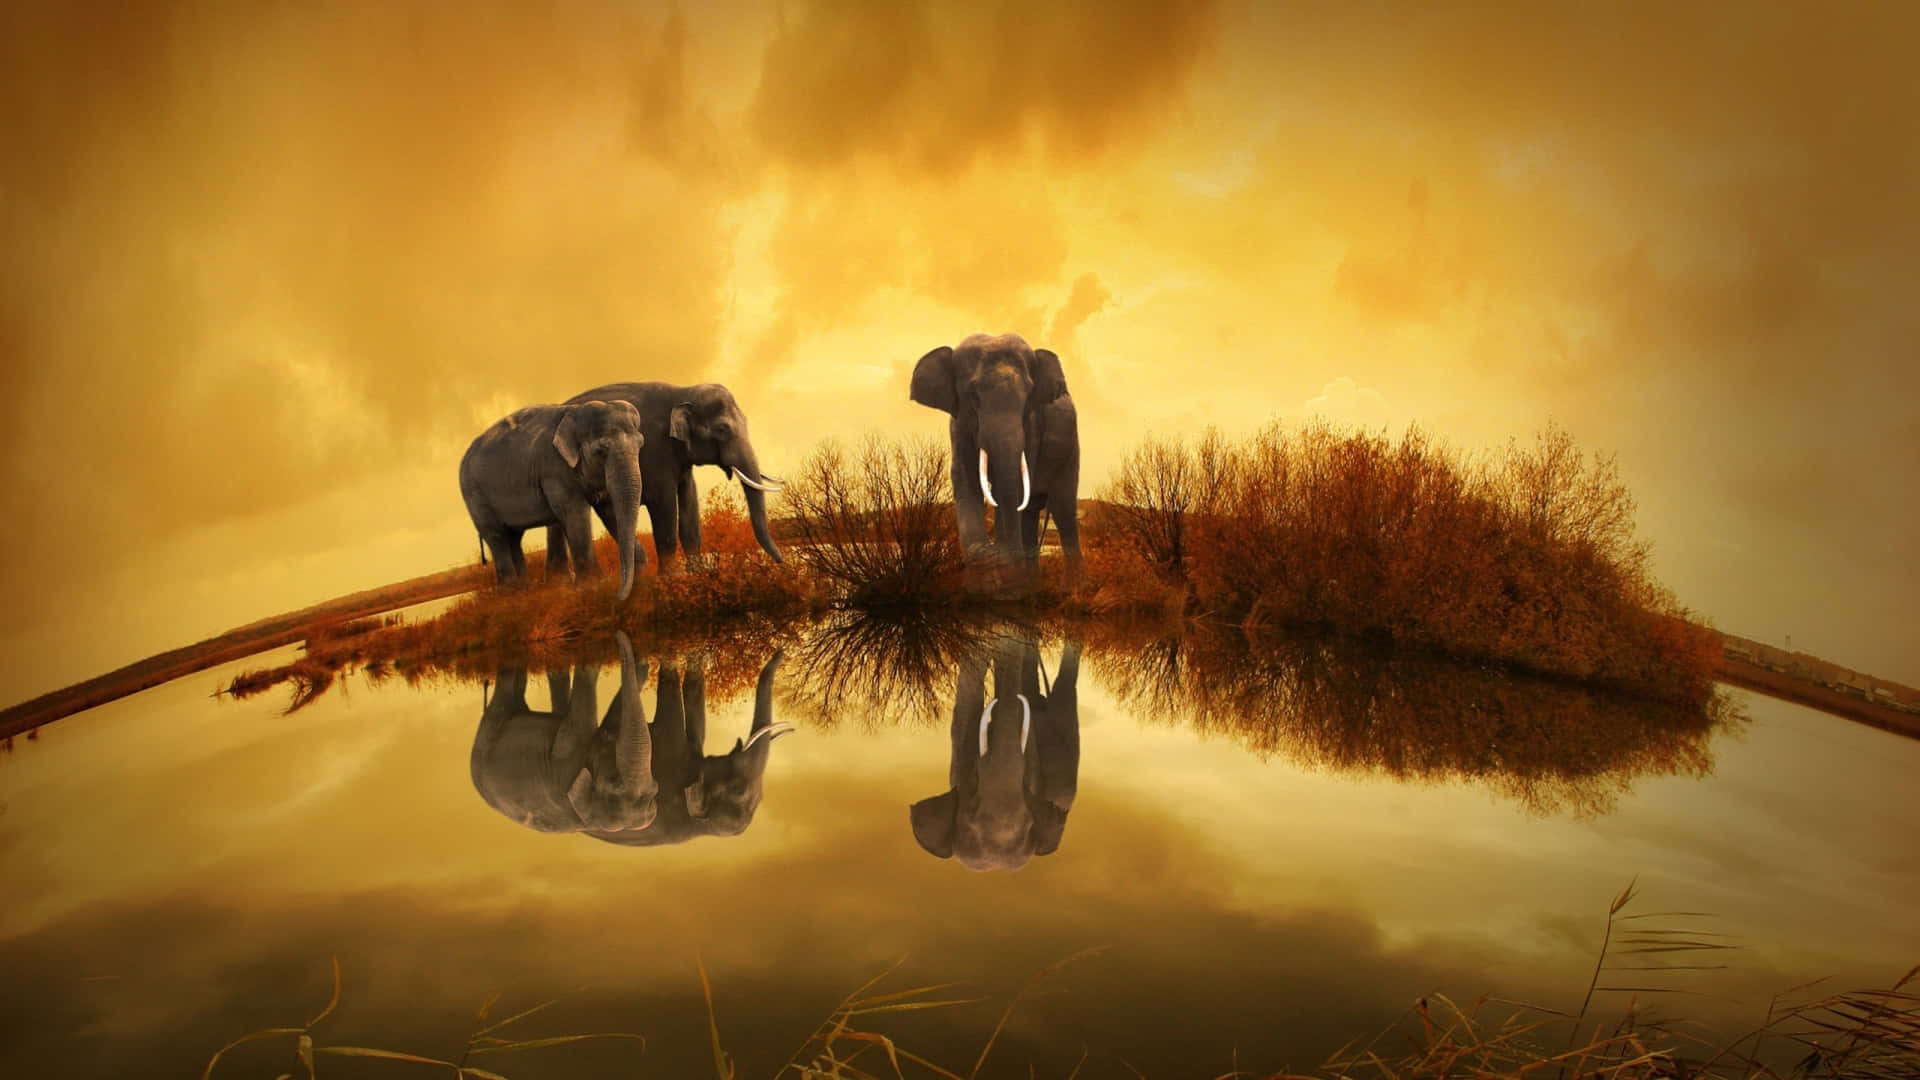 a large pond with elephants